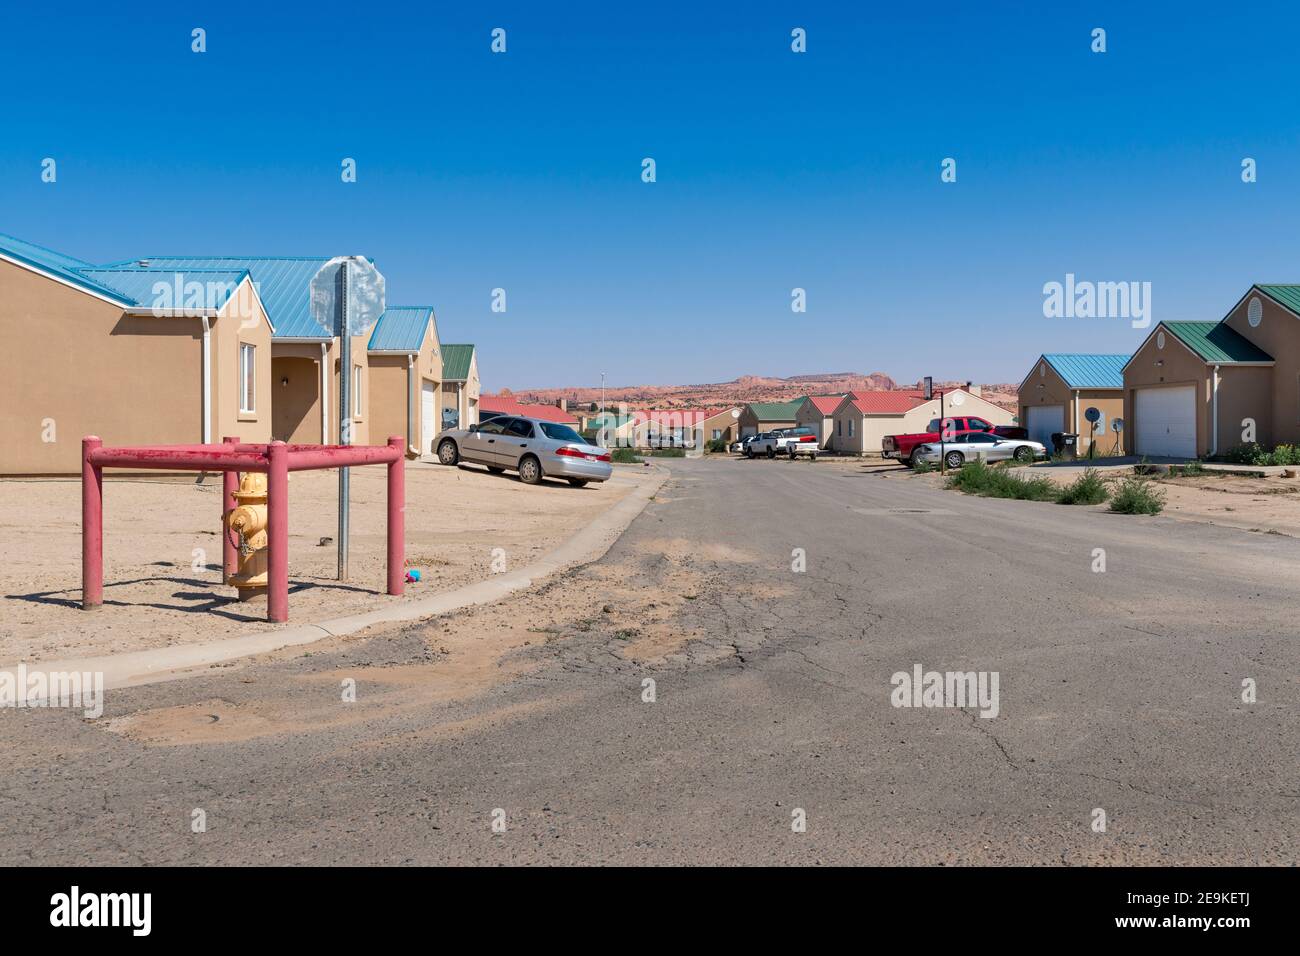 Kayenta, Arizona - 17 luglio 204: Vista di un quartiere residenziale nella cittadina di Kayenta, nella contea di Navajo, stato dell'Arizona, Stati Uniti. Foto Stock